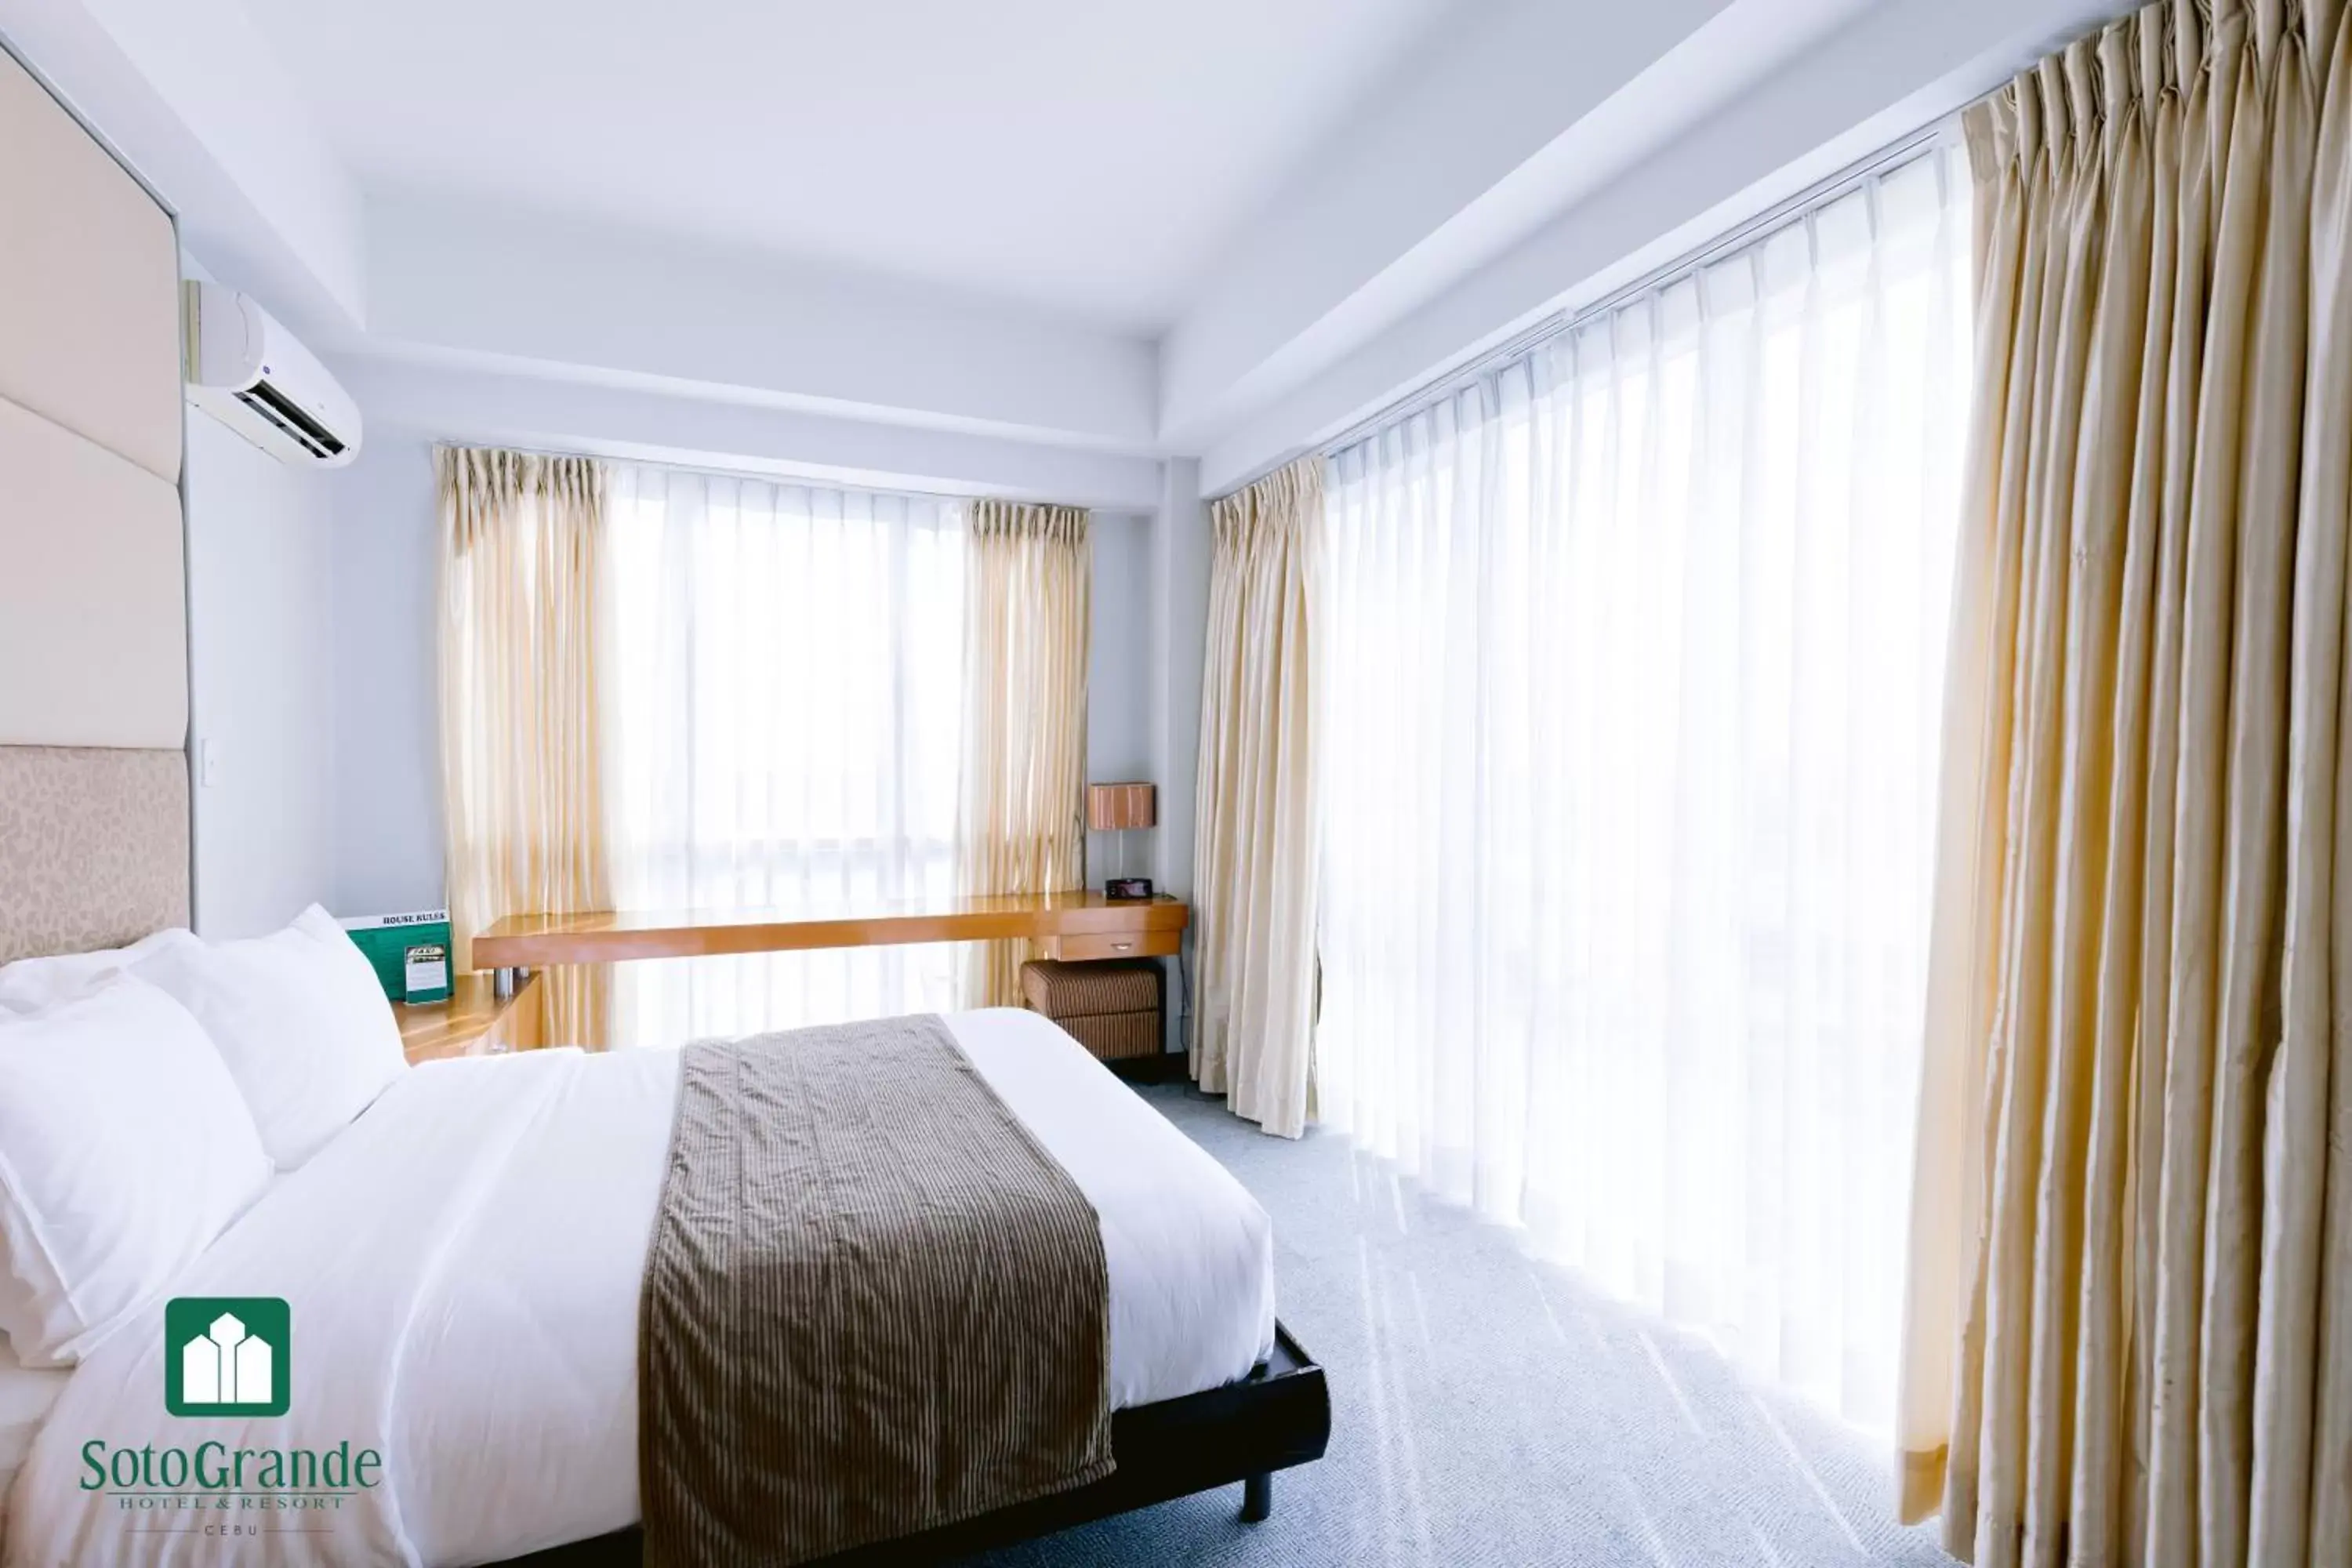 Bedroom, Bed in Sotogrande Hotel and Resort